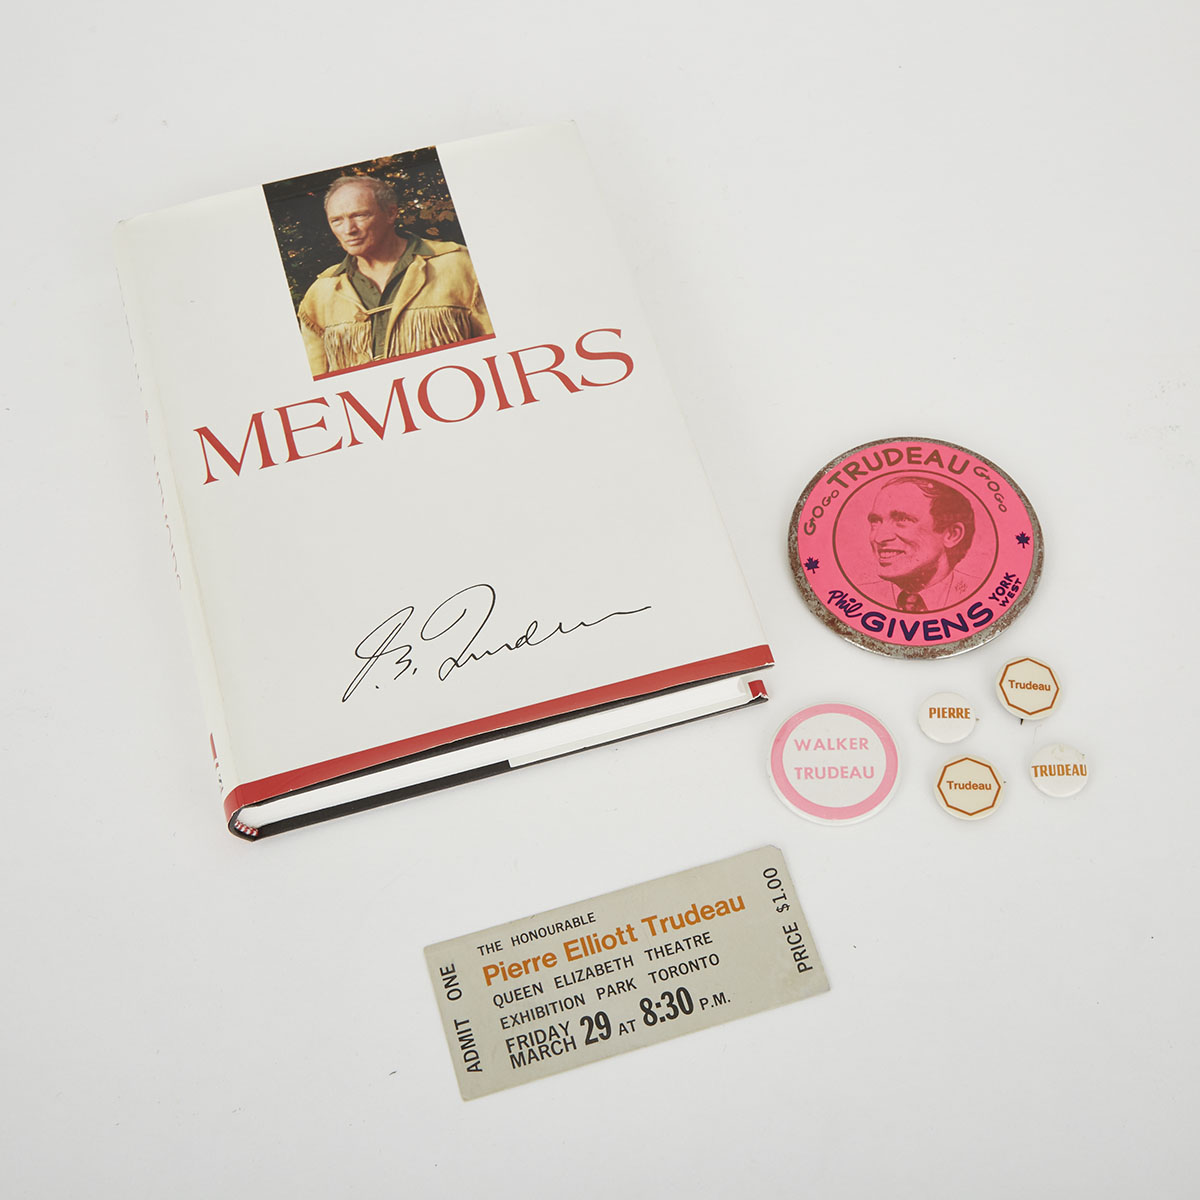 Pierre Elliot Trudeau: Memoirs (Autographed), 1993, Speaking Engagement Ticket (Autographed), 1972, Six Campaign Buttons, 1968